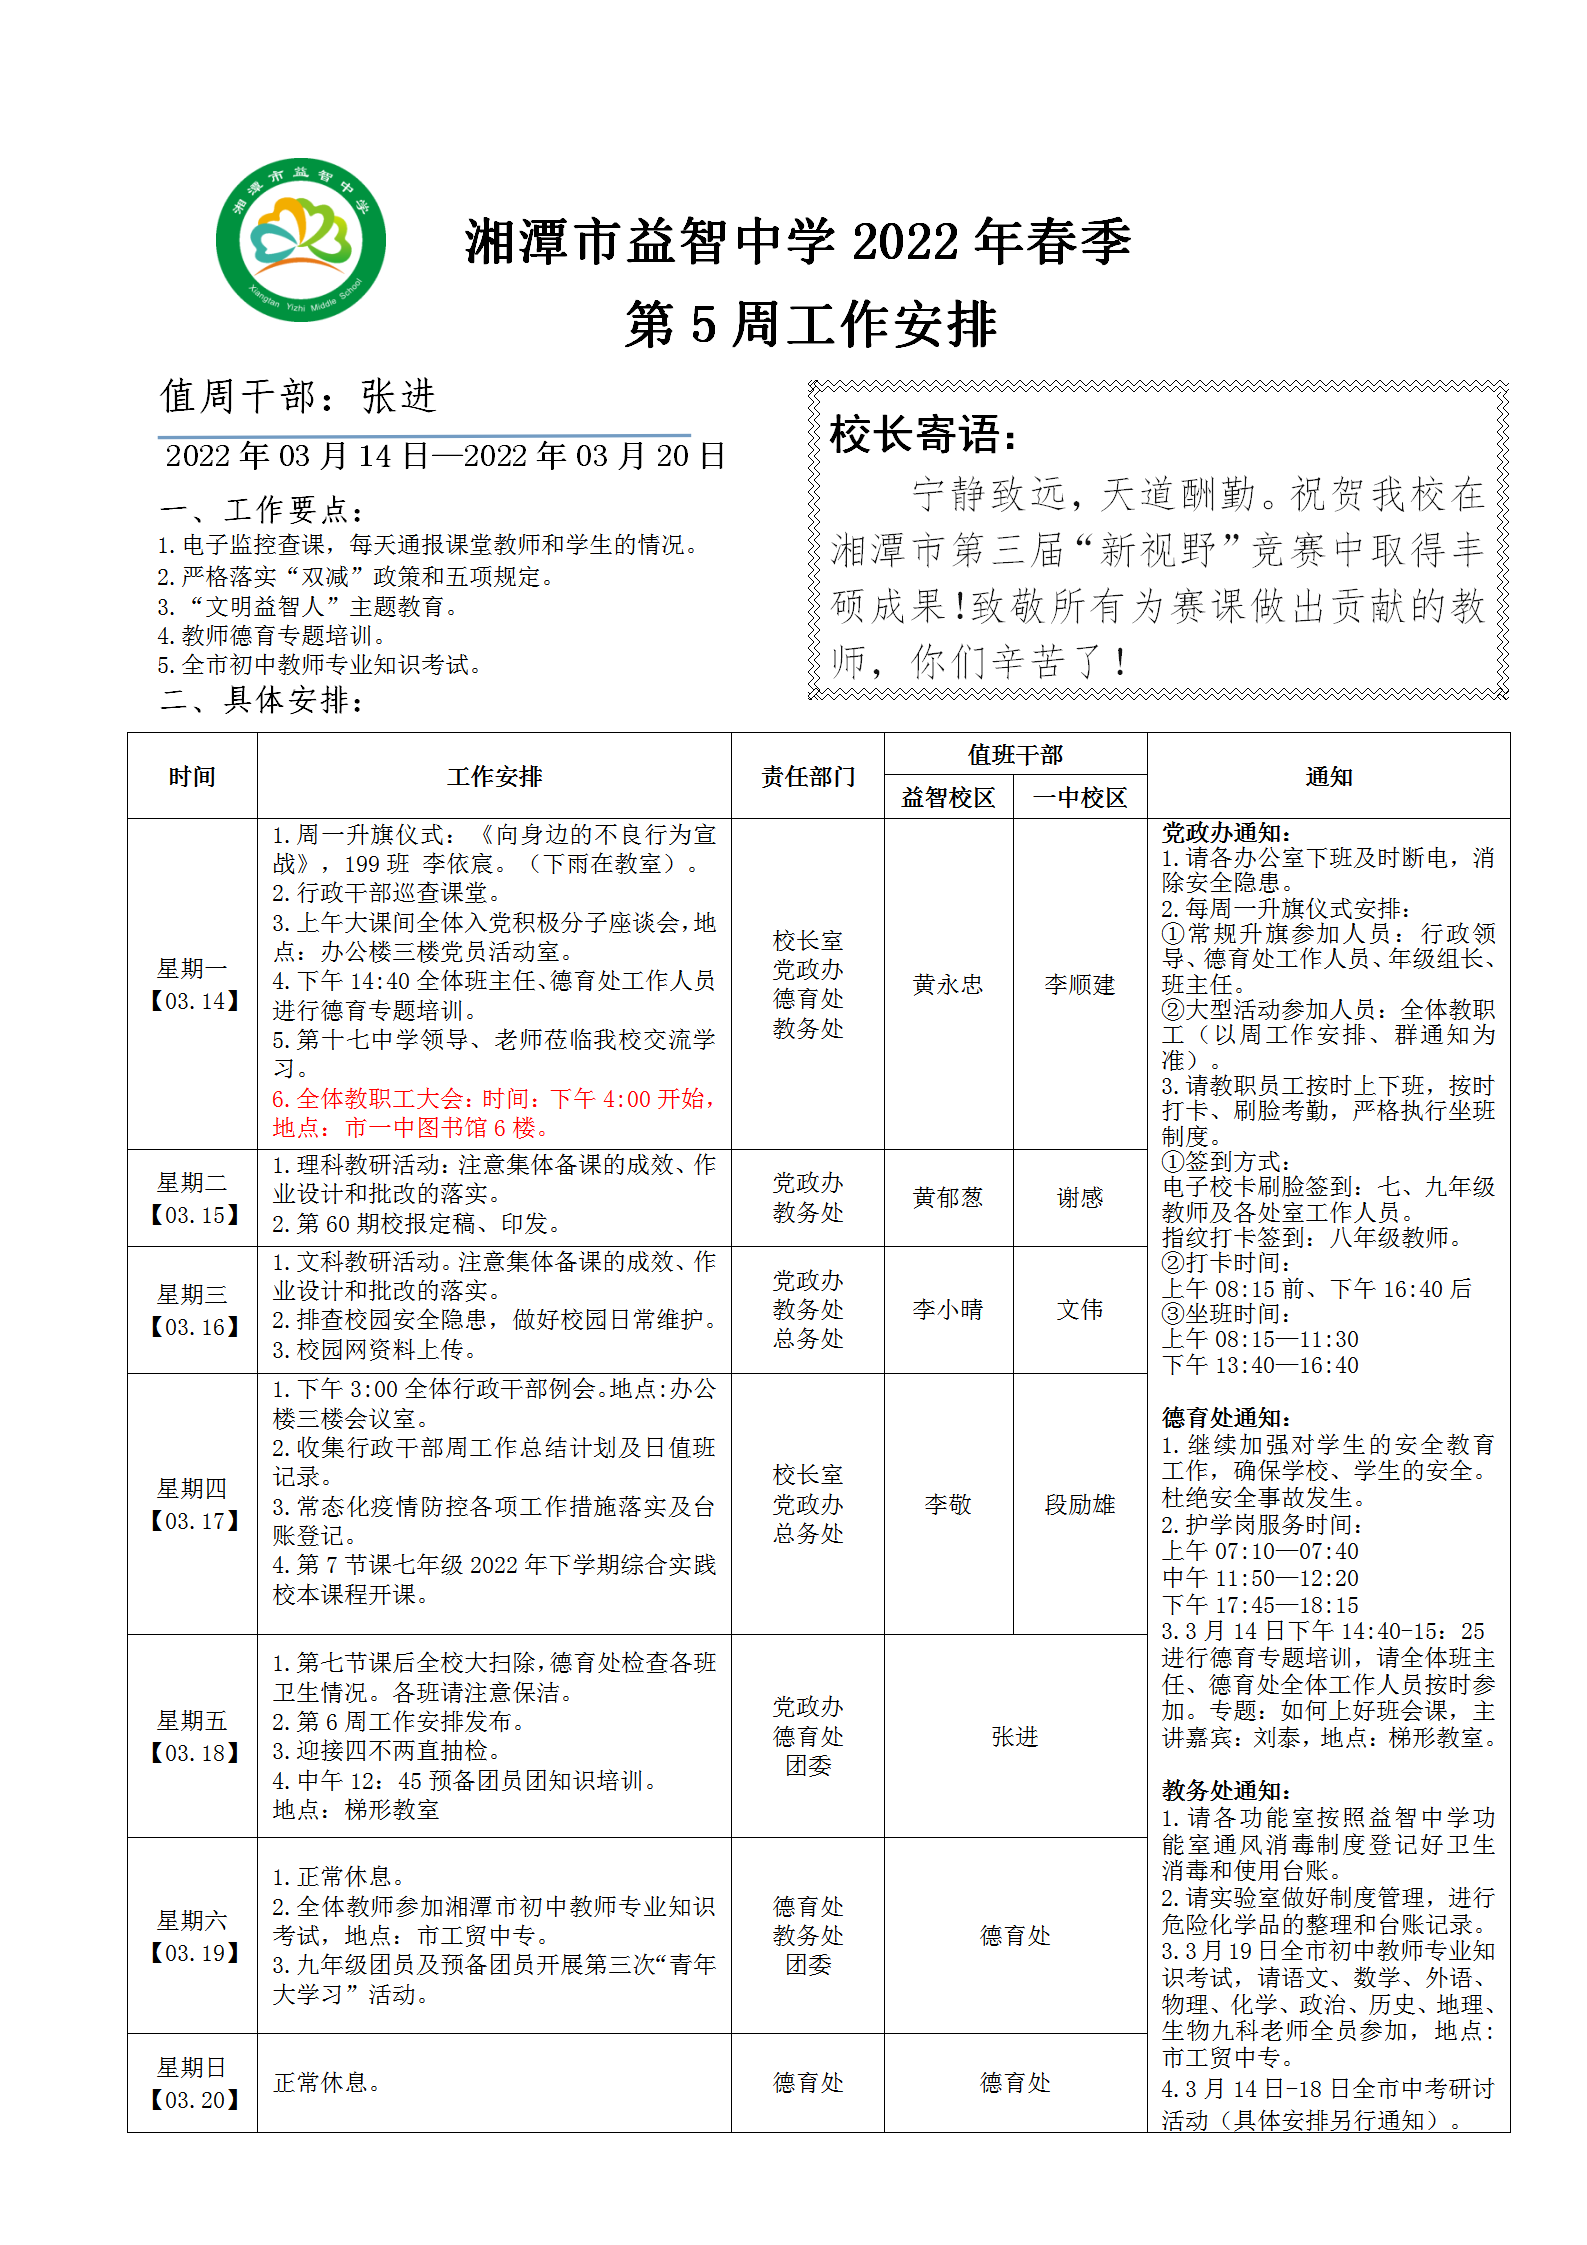 湘潭市益智中学2022年春季第五周工作安排